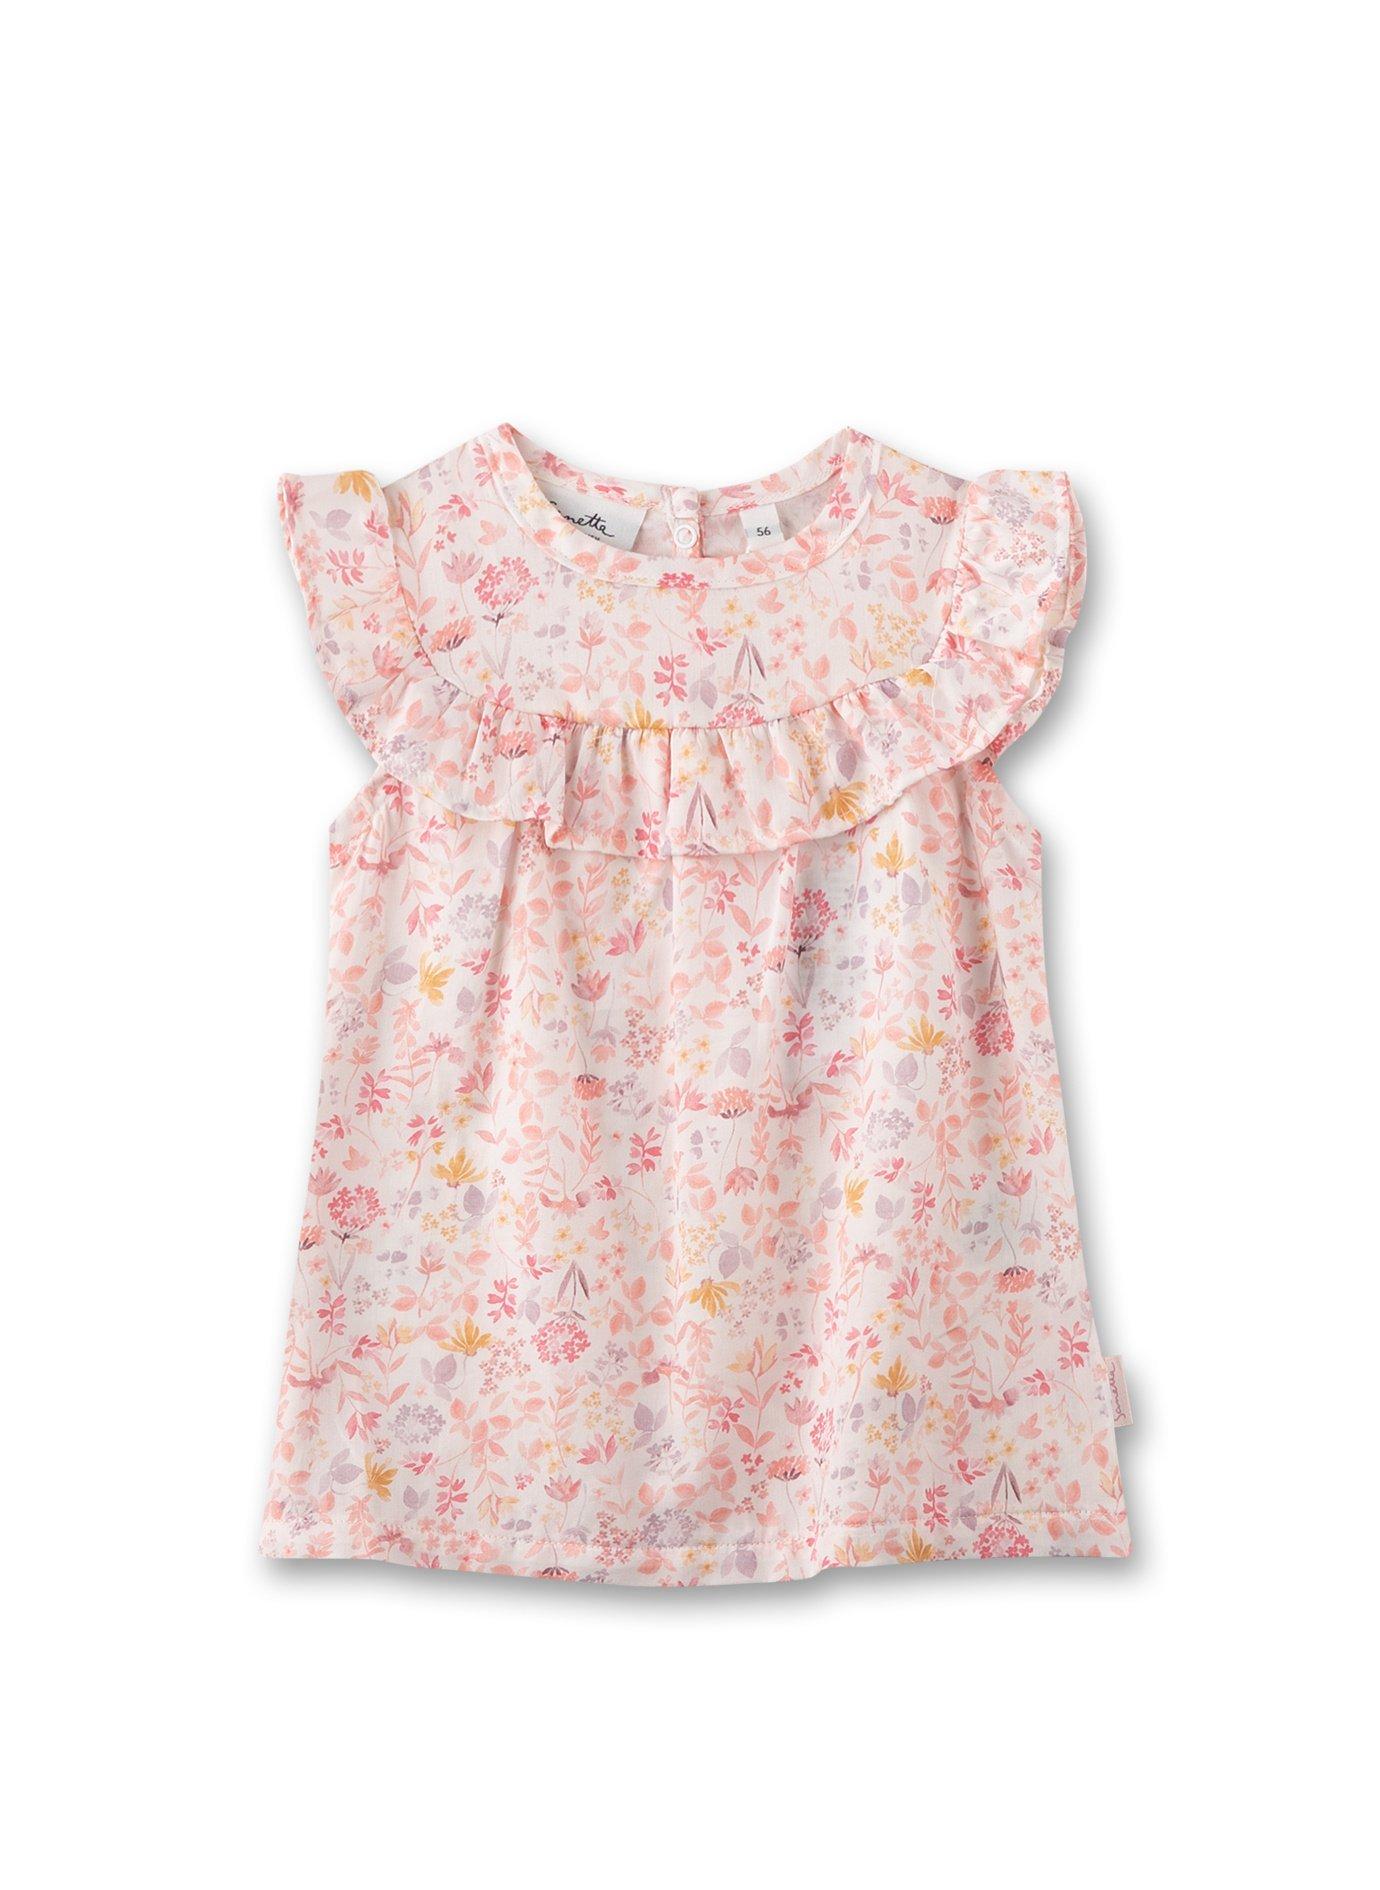 Baby Mädchen Kleid Blumen Off-white Unisex Rosa 62 von Sanetta Fiftyseven